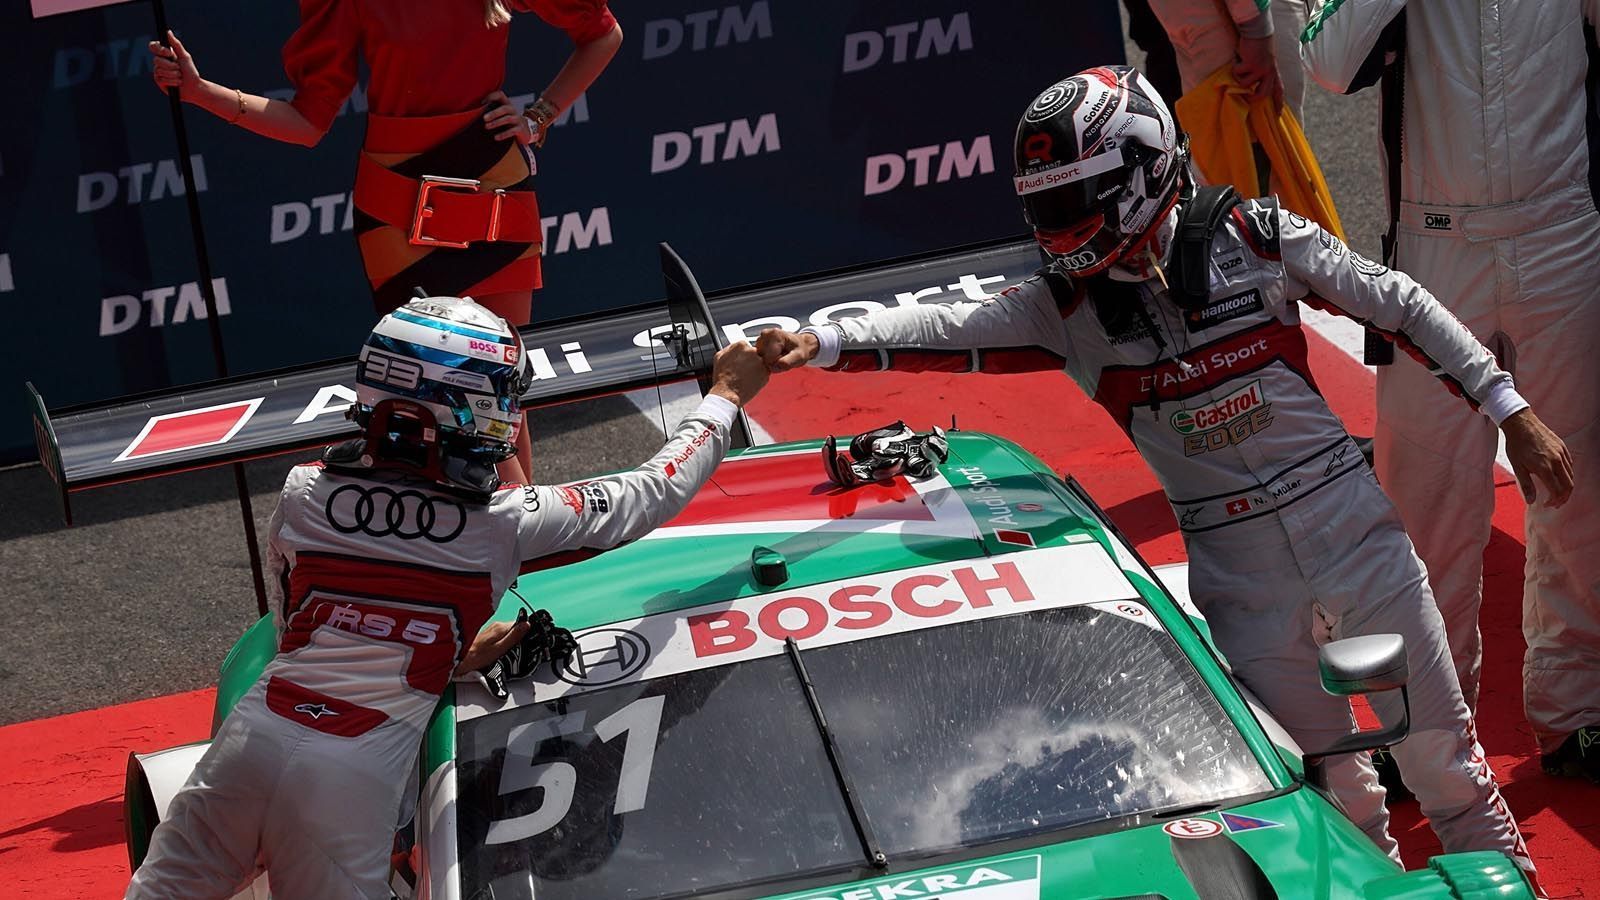 
                <strong>2. Audi dominiert auch im Abschiedsjahr</strong><br>
                2020 ist die letzte DTM-Saison der Ingolstädter. Doch die ersten beiden Rennen deuten an, dass sie sich höchst erfolgreich aus der Tourenwagen-Serie verabschieden werden. In beiden Läufen gingen jeweils die ersten fünf Plätze an die Marke mit den vier Ringen.
              